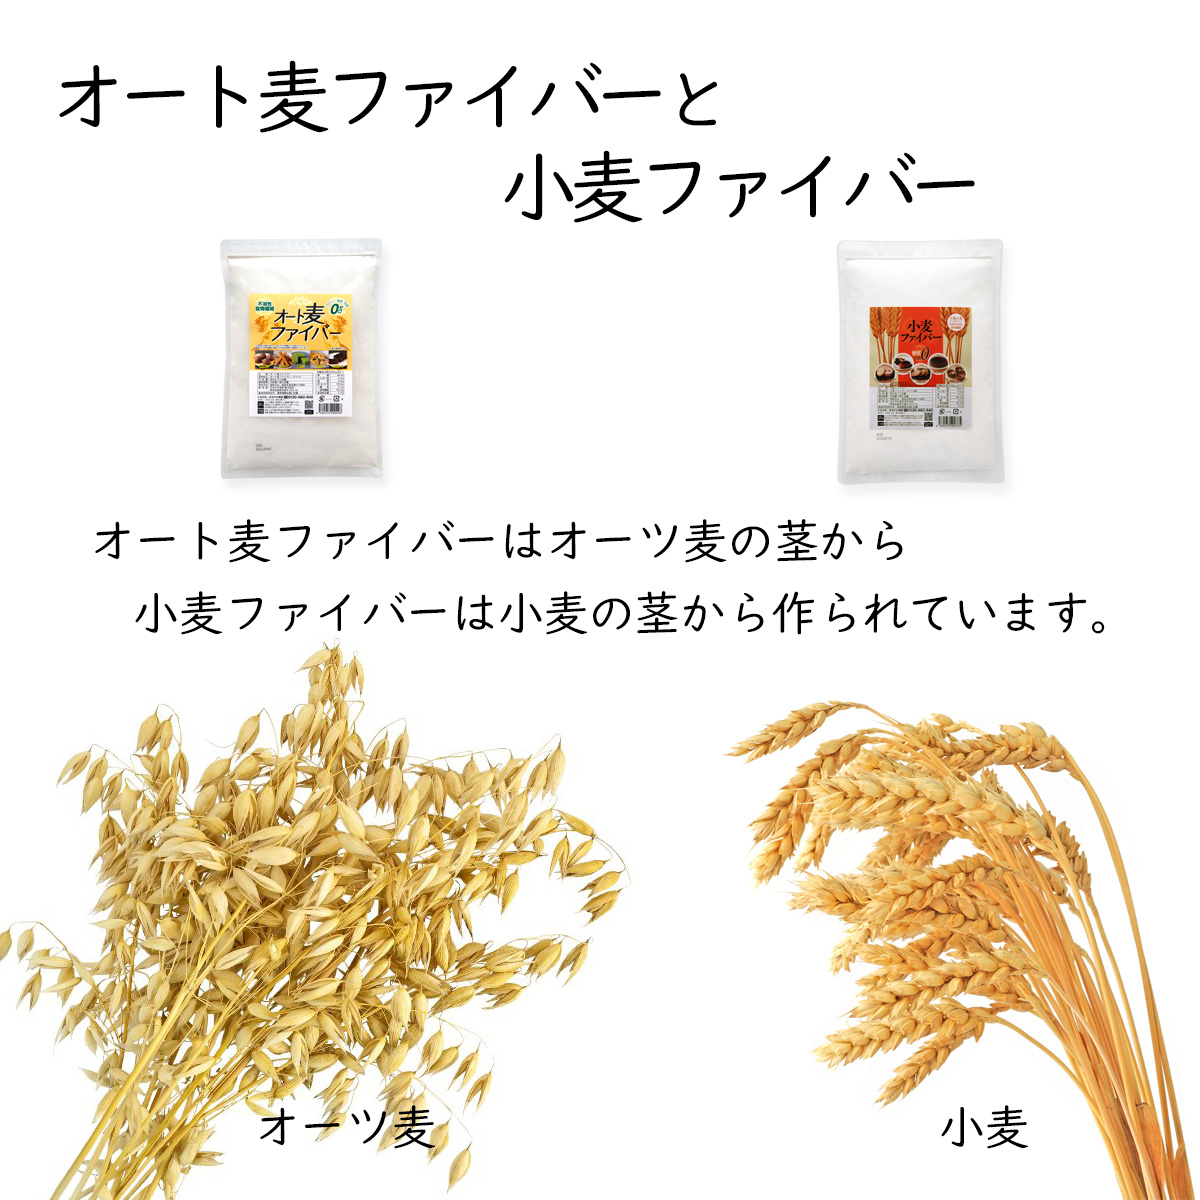 オート麦ファイバーと小麦ファイバーオート麦ファイバーはオーツ麦の茎から小麦ファイバーは小麦の茎から作られています。オーツ麦小麦